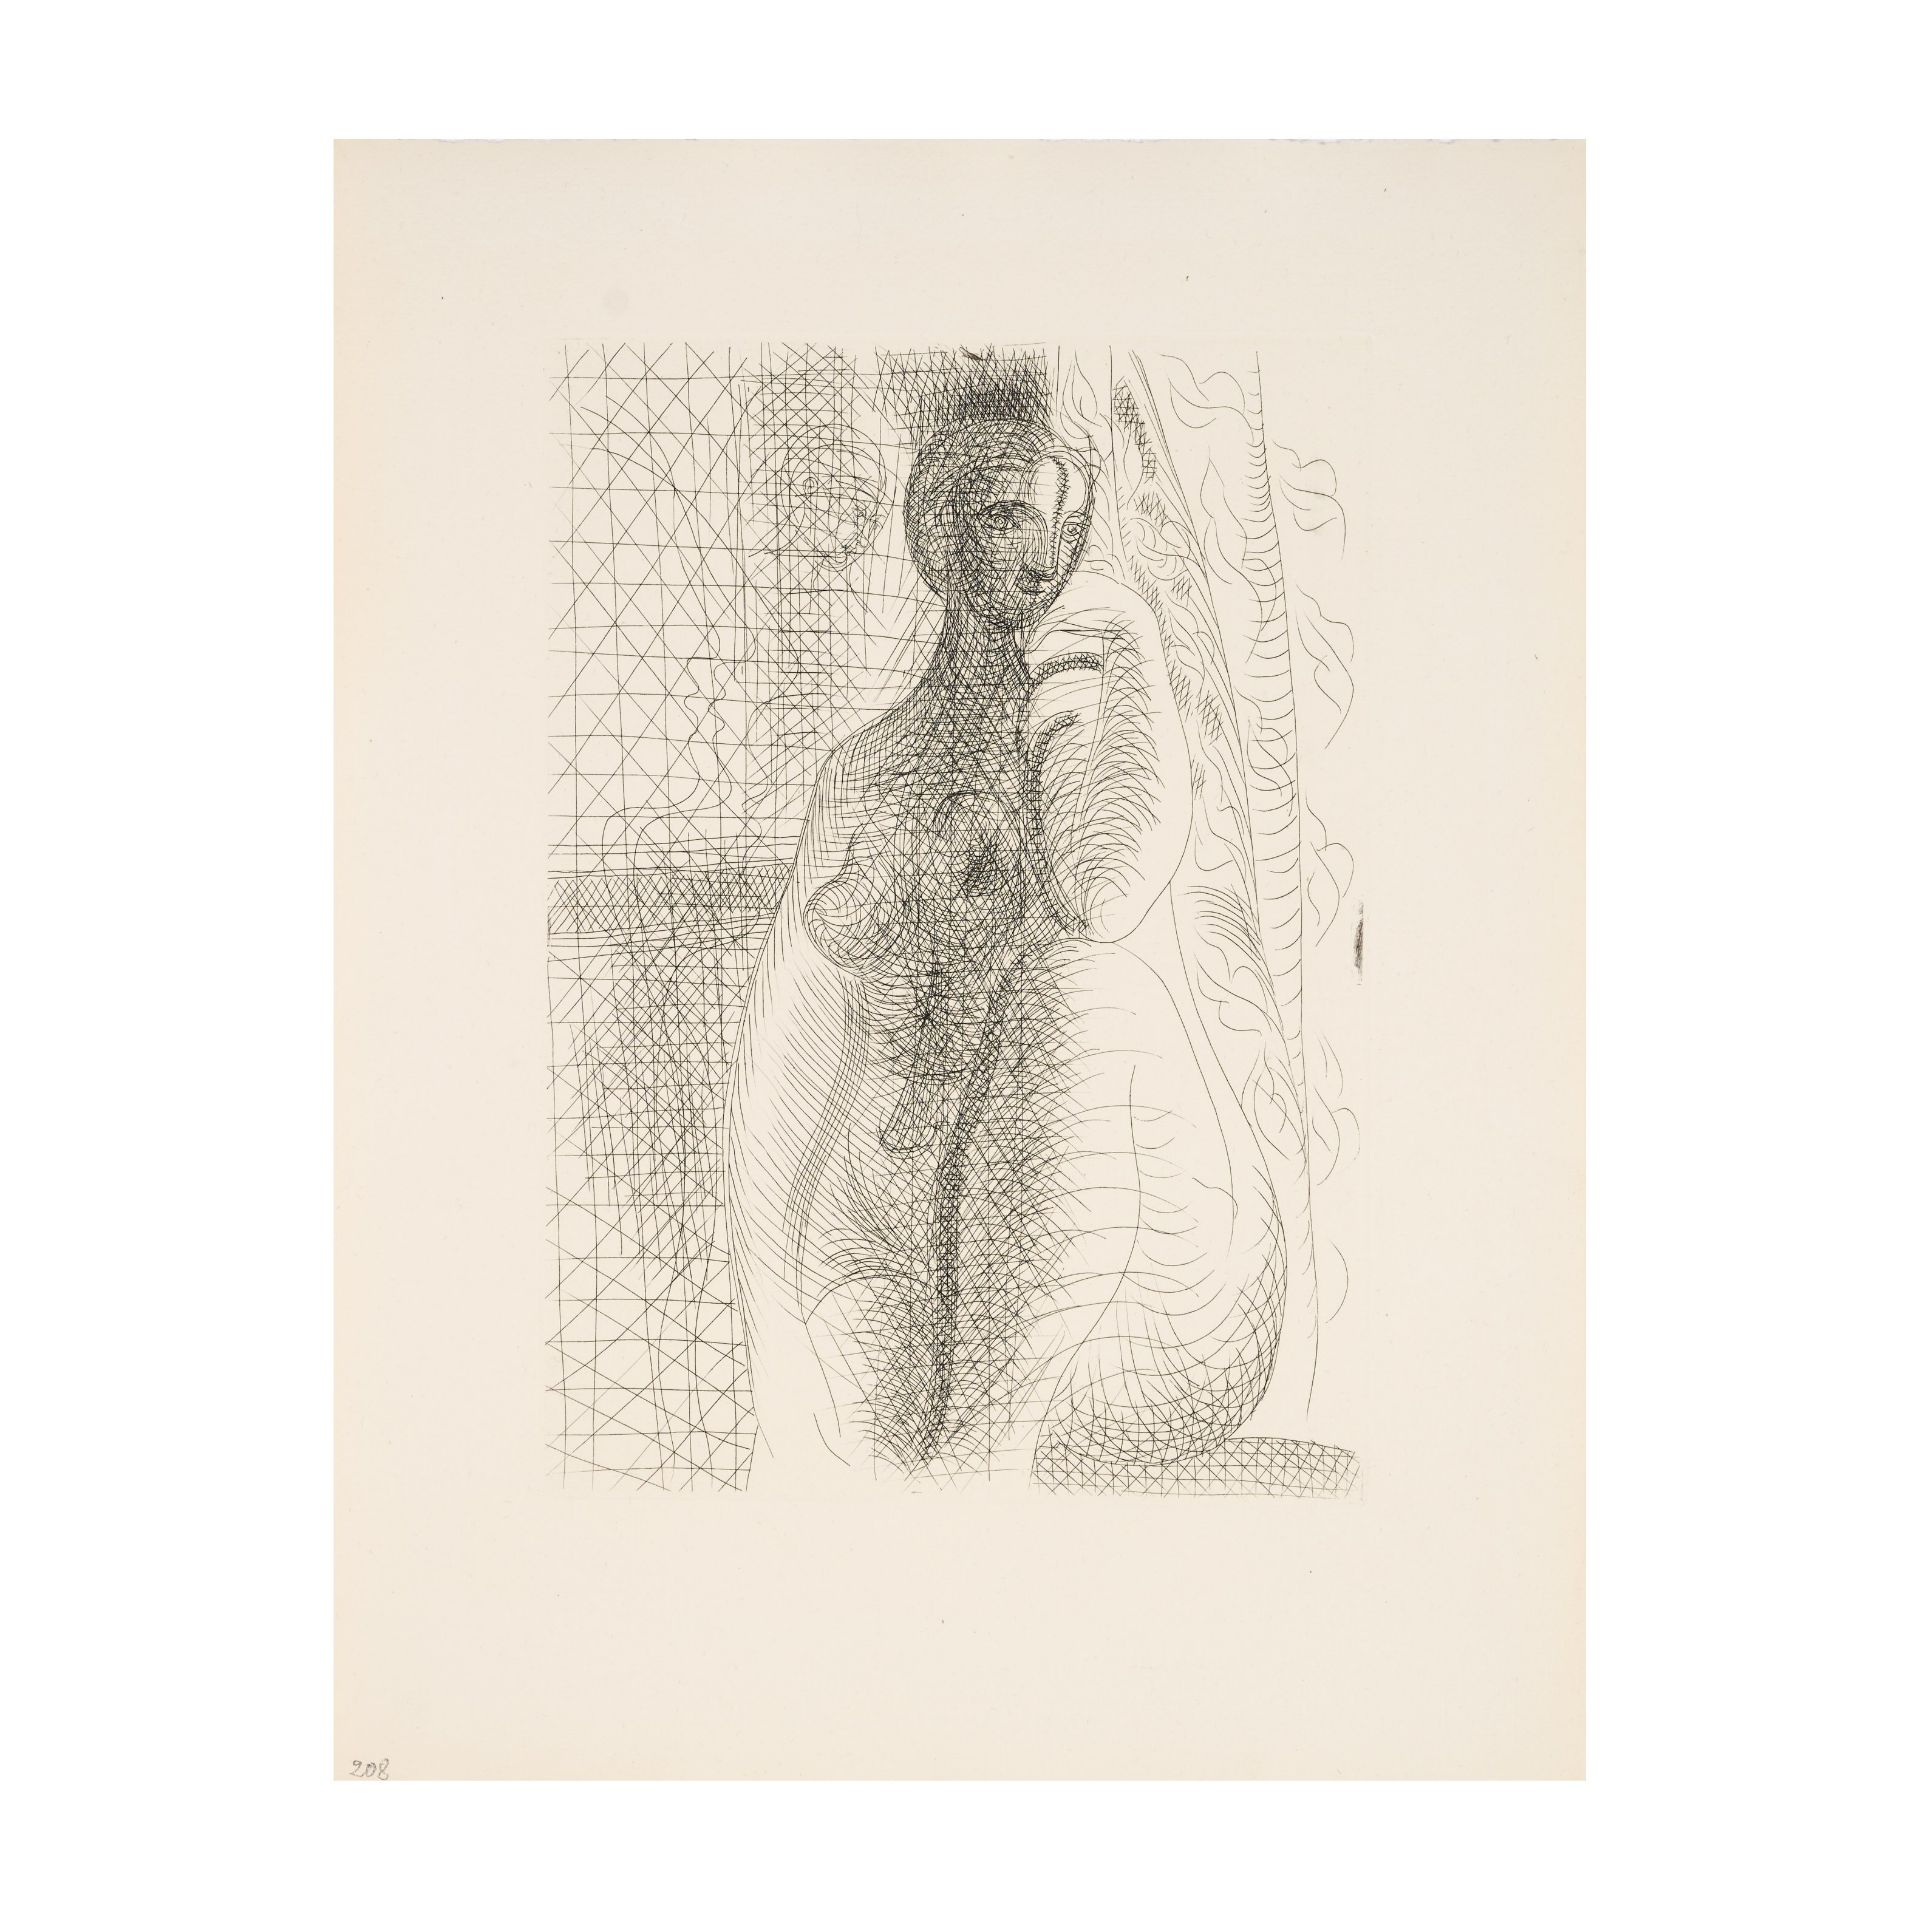 PABLO PICASSO (1881-1973) Femme nue, la jambe pli&#233;e, 1931 (Bloch, 141 ; Baer, 208 B d)Planc...